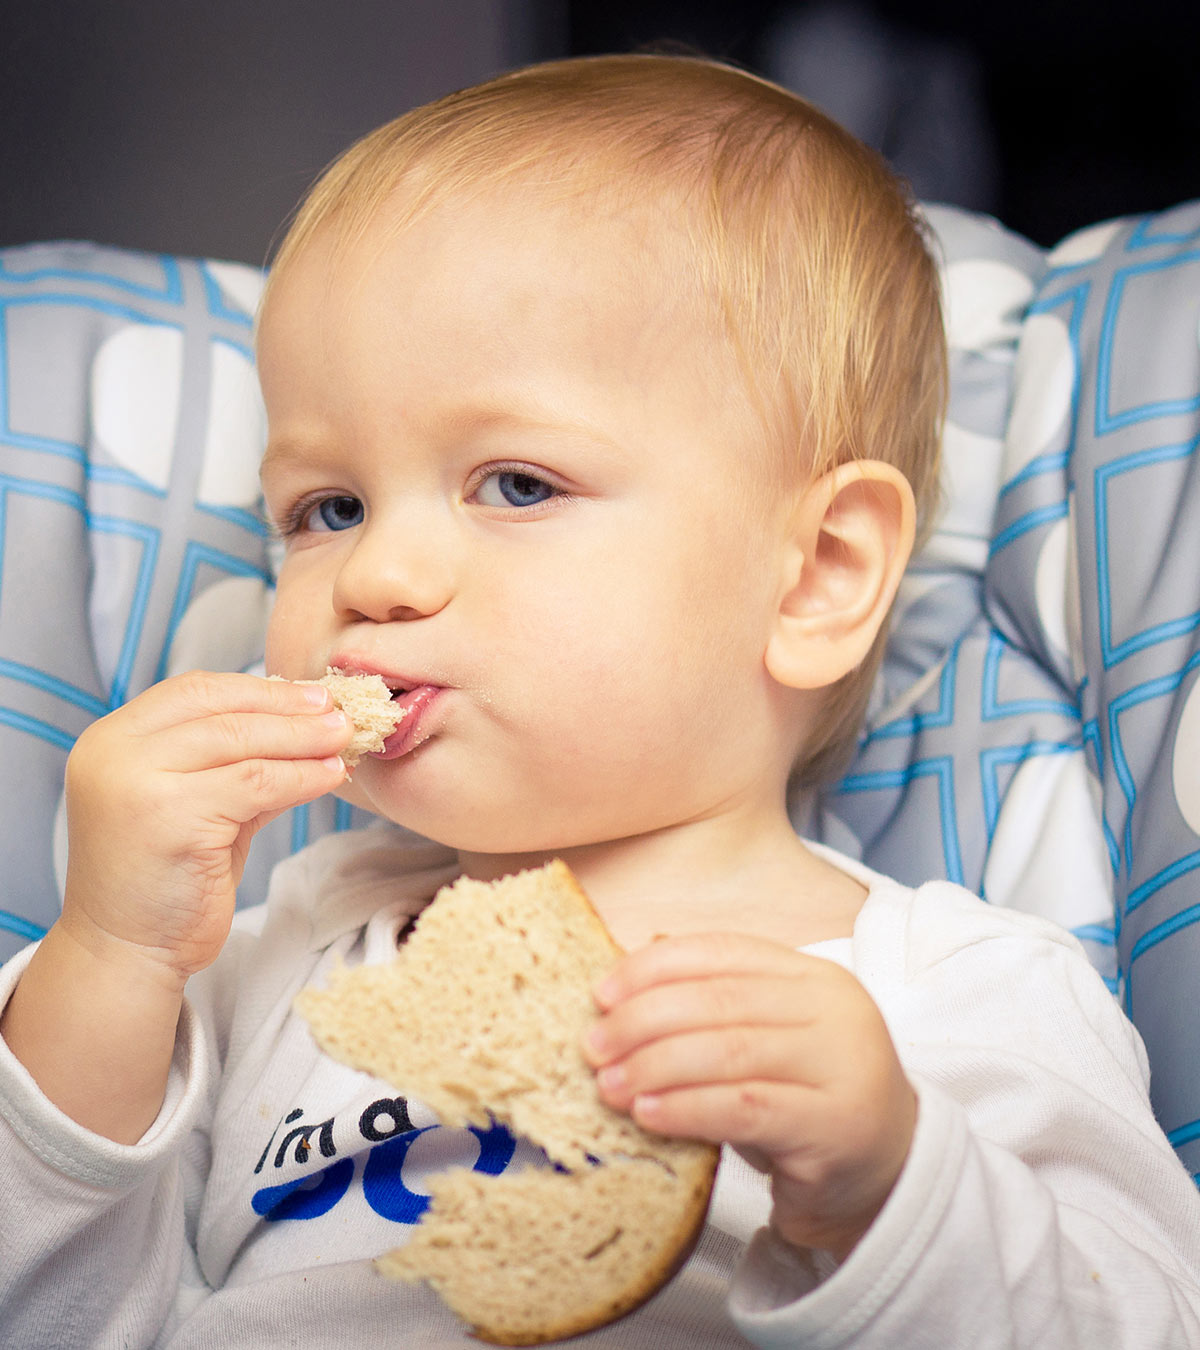 小麦对婴儿:适当的年龄介绍和注意事项